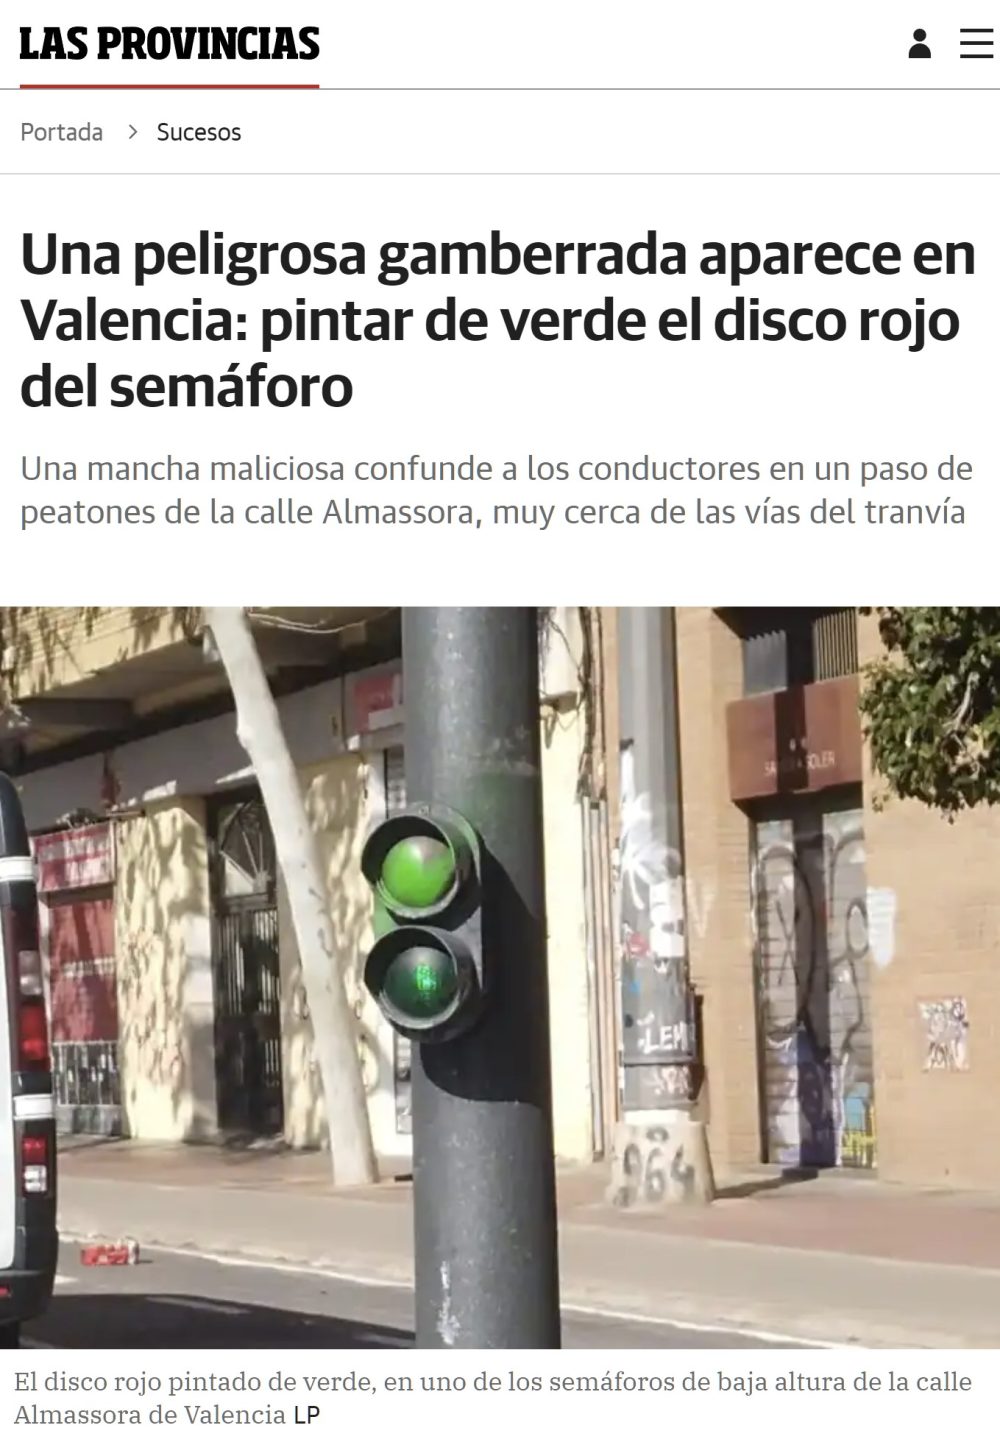 La nueva moda en Valencia: pintar de verde la luz roja de los semáforos.